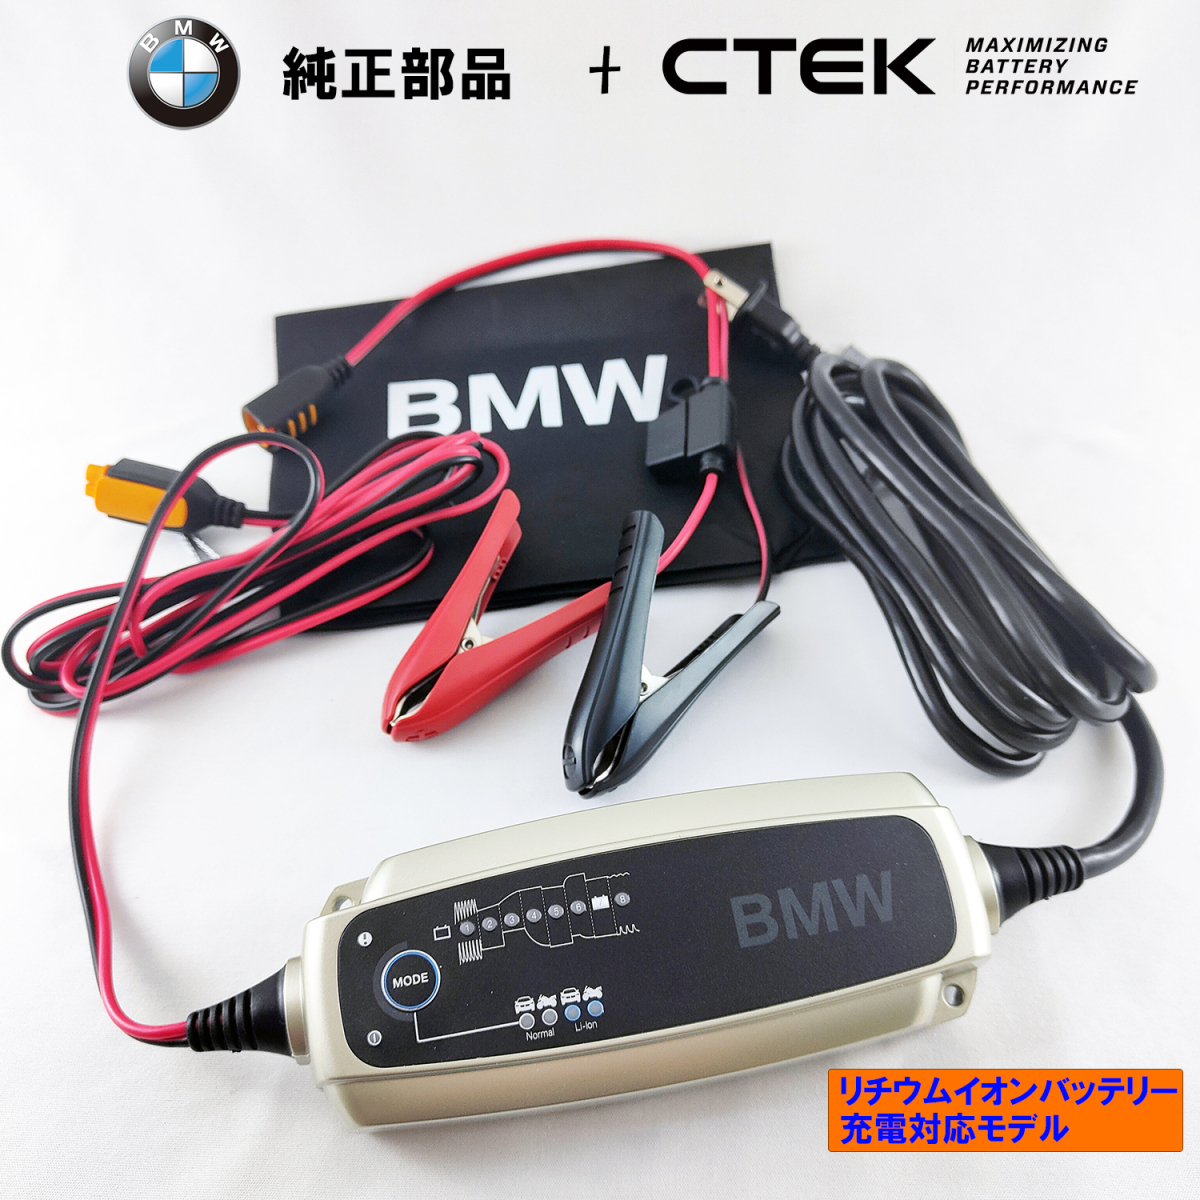 BMW 純正 部品 CTEK メンテナンス・充電器 米国仕様 リチウム・バッテリー 充電可能 コンフォート・コネクト 採用 AGM_画像1